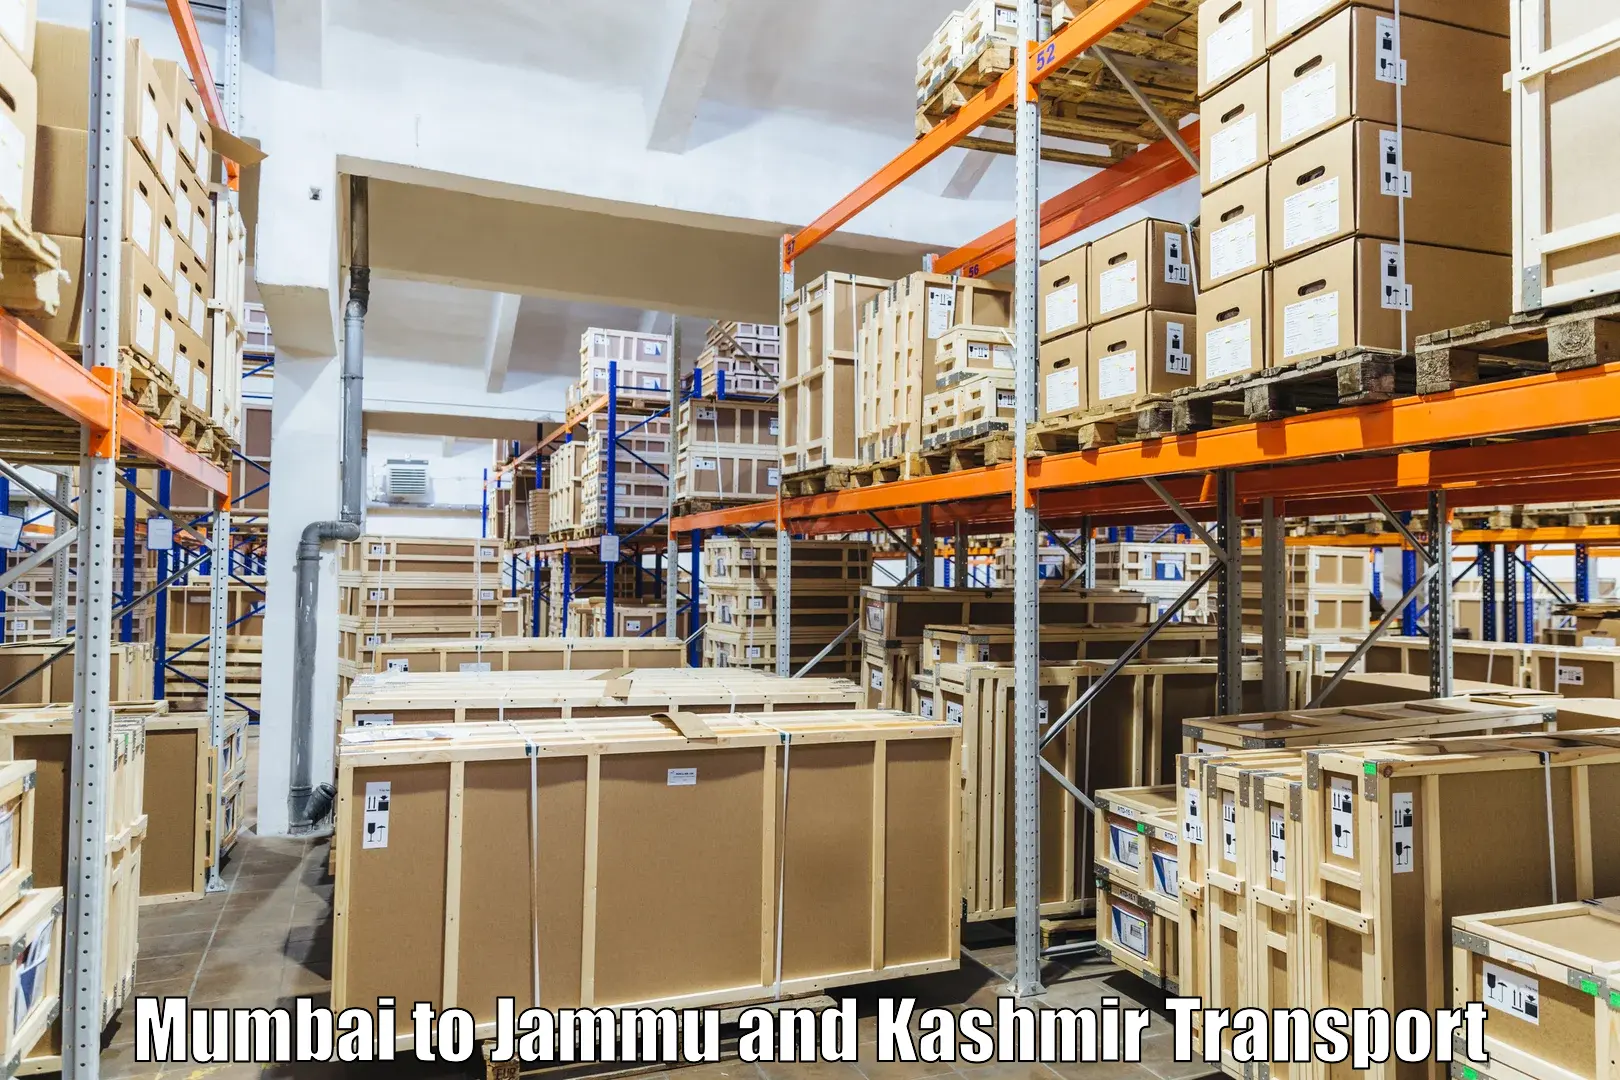 Daily parcel service transport Mumbai to Jammu and Kashmir